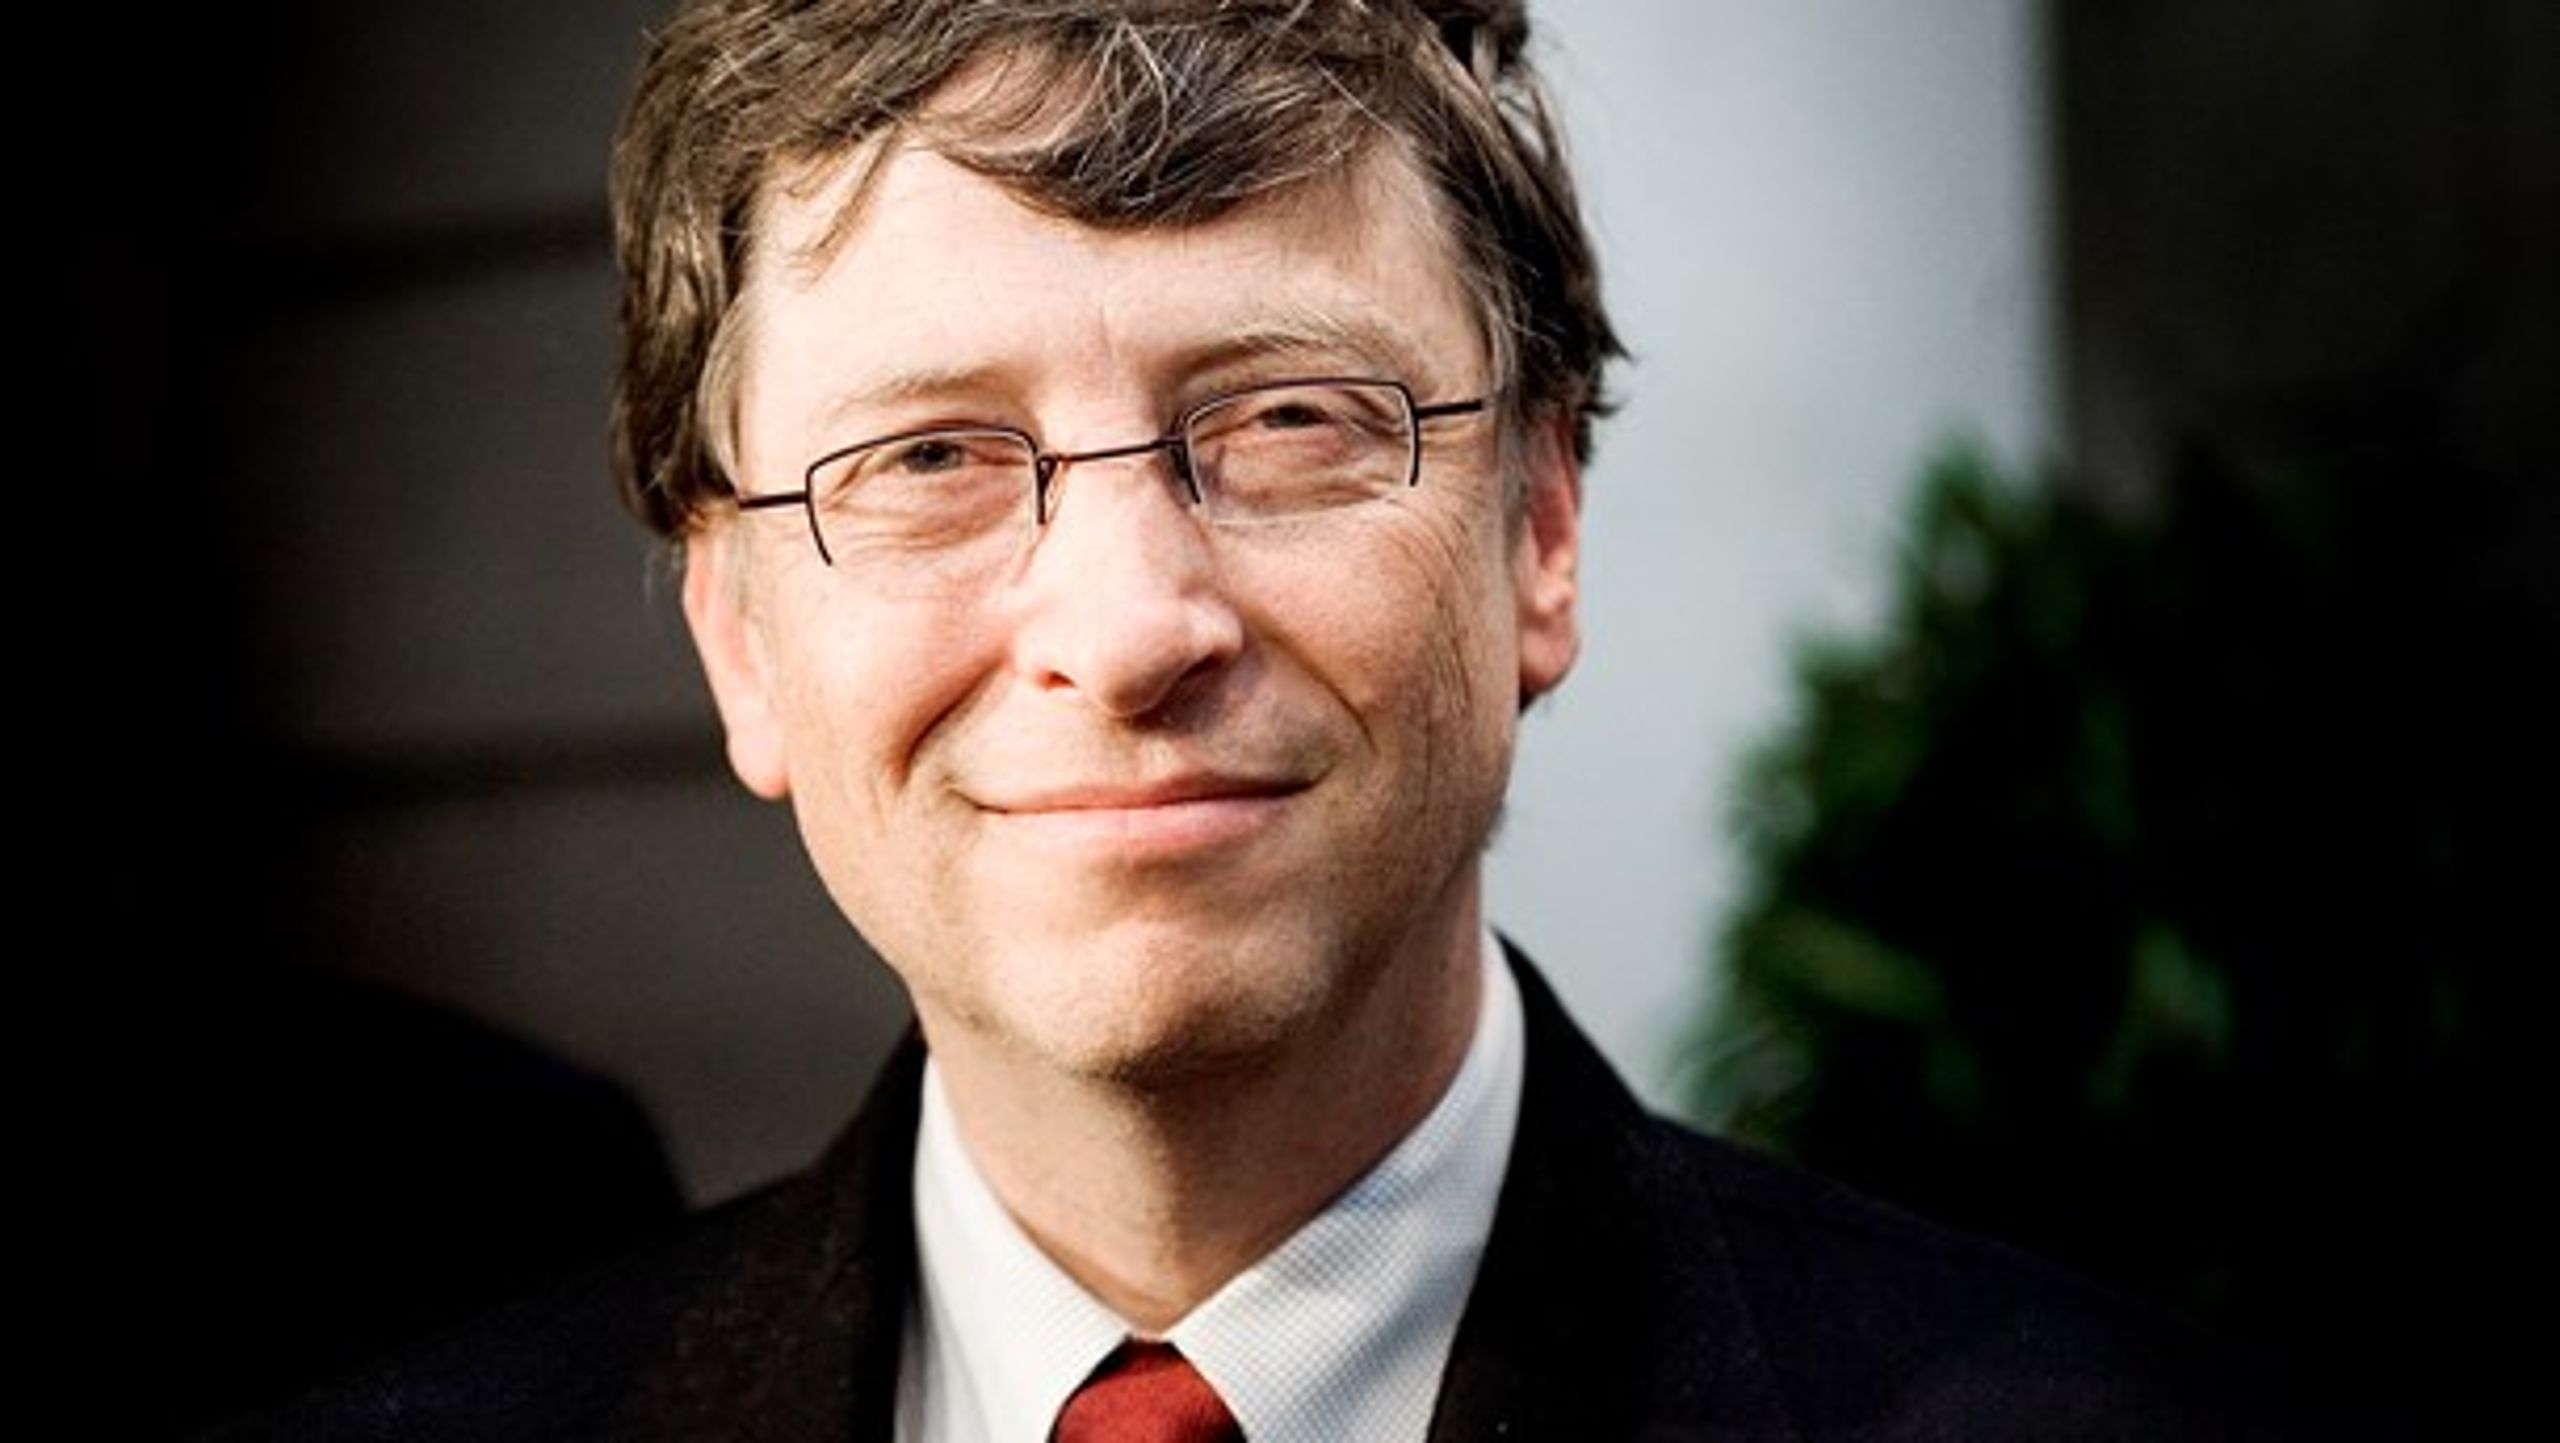 Med en formue på 75 mia. dollar topper Bill Gates Oxfarms liste over verdens otte rigeste mænd.&nbsp;